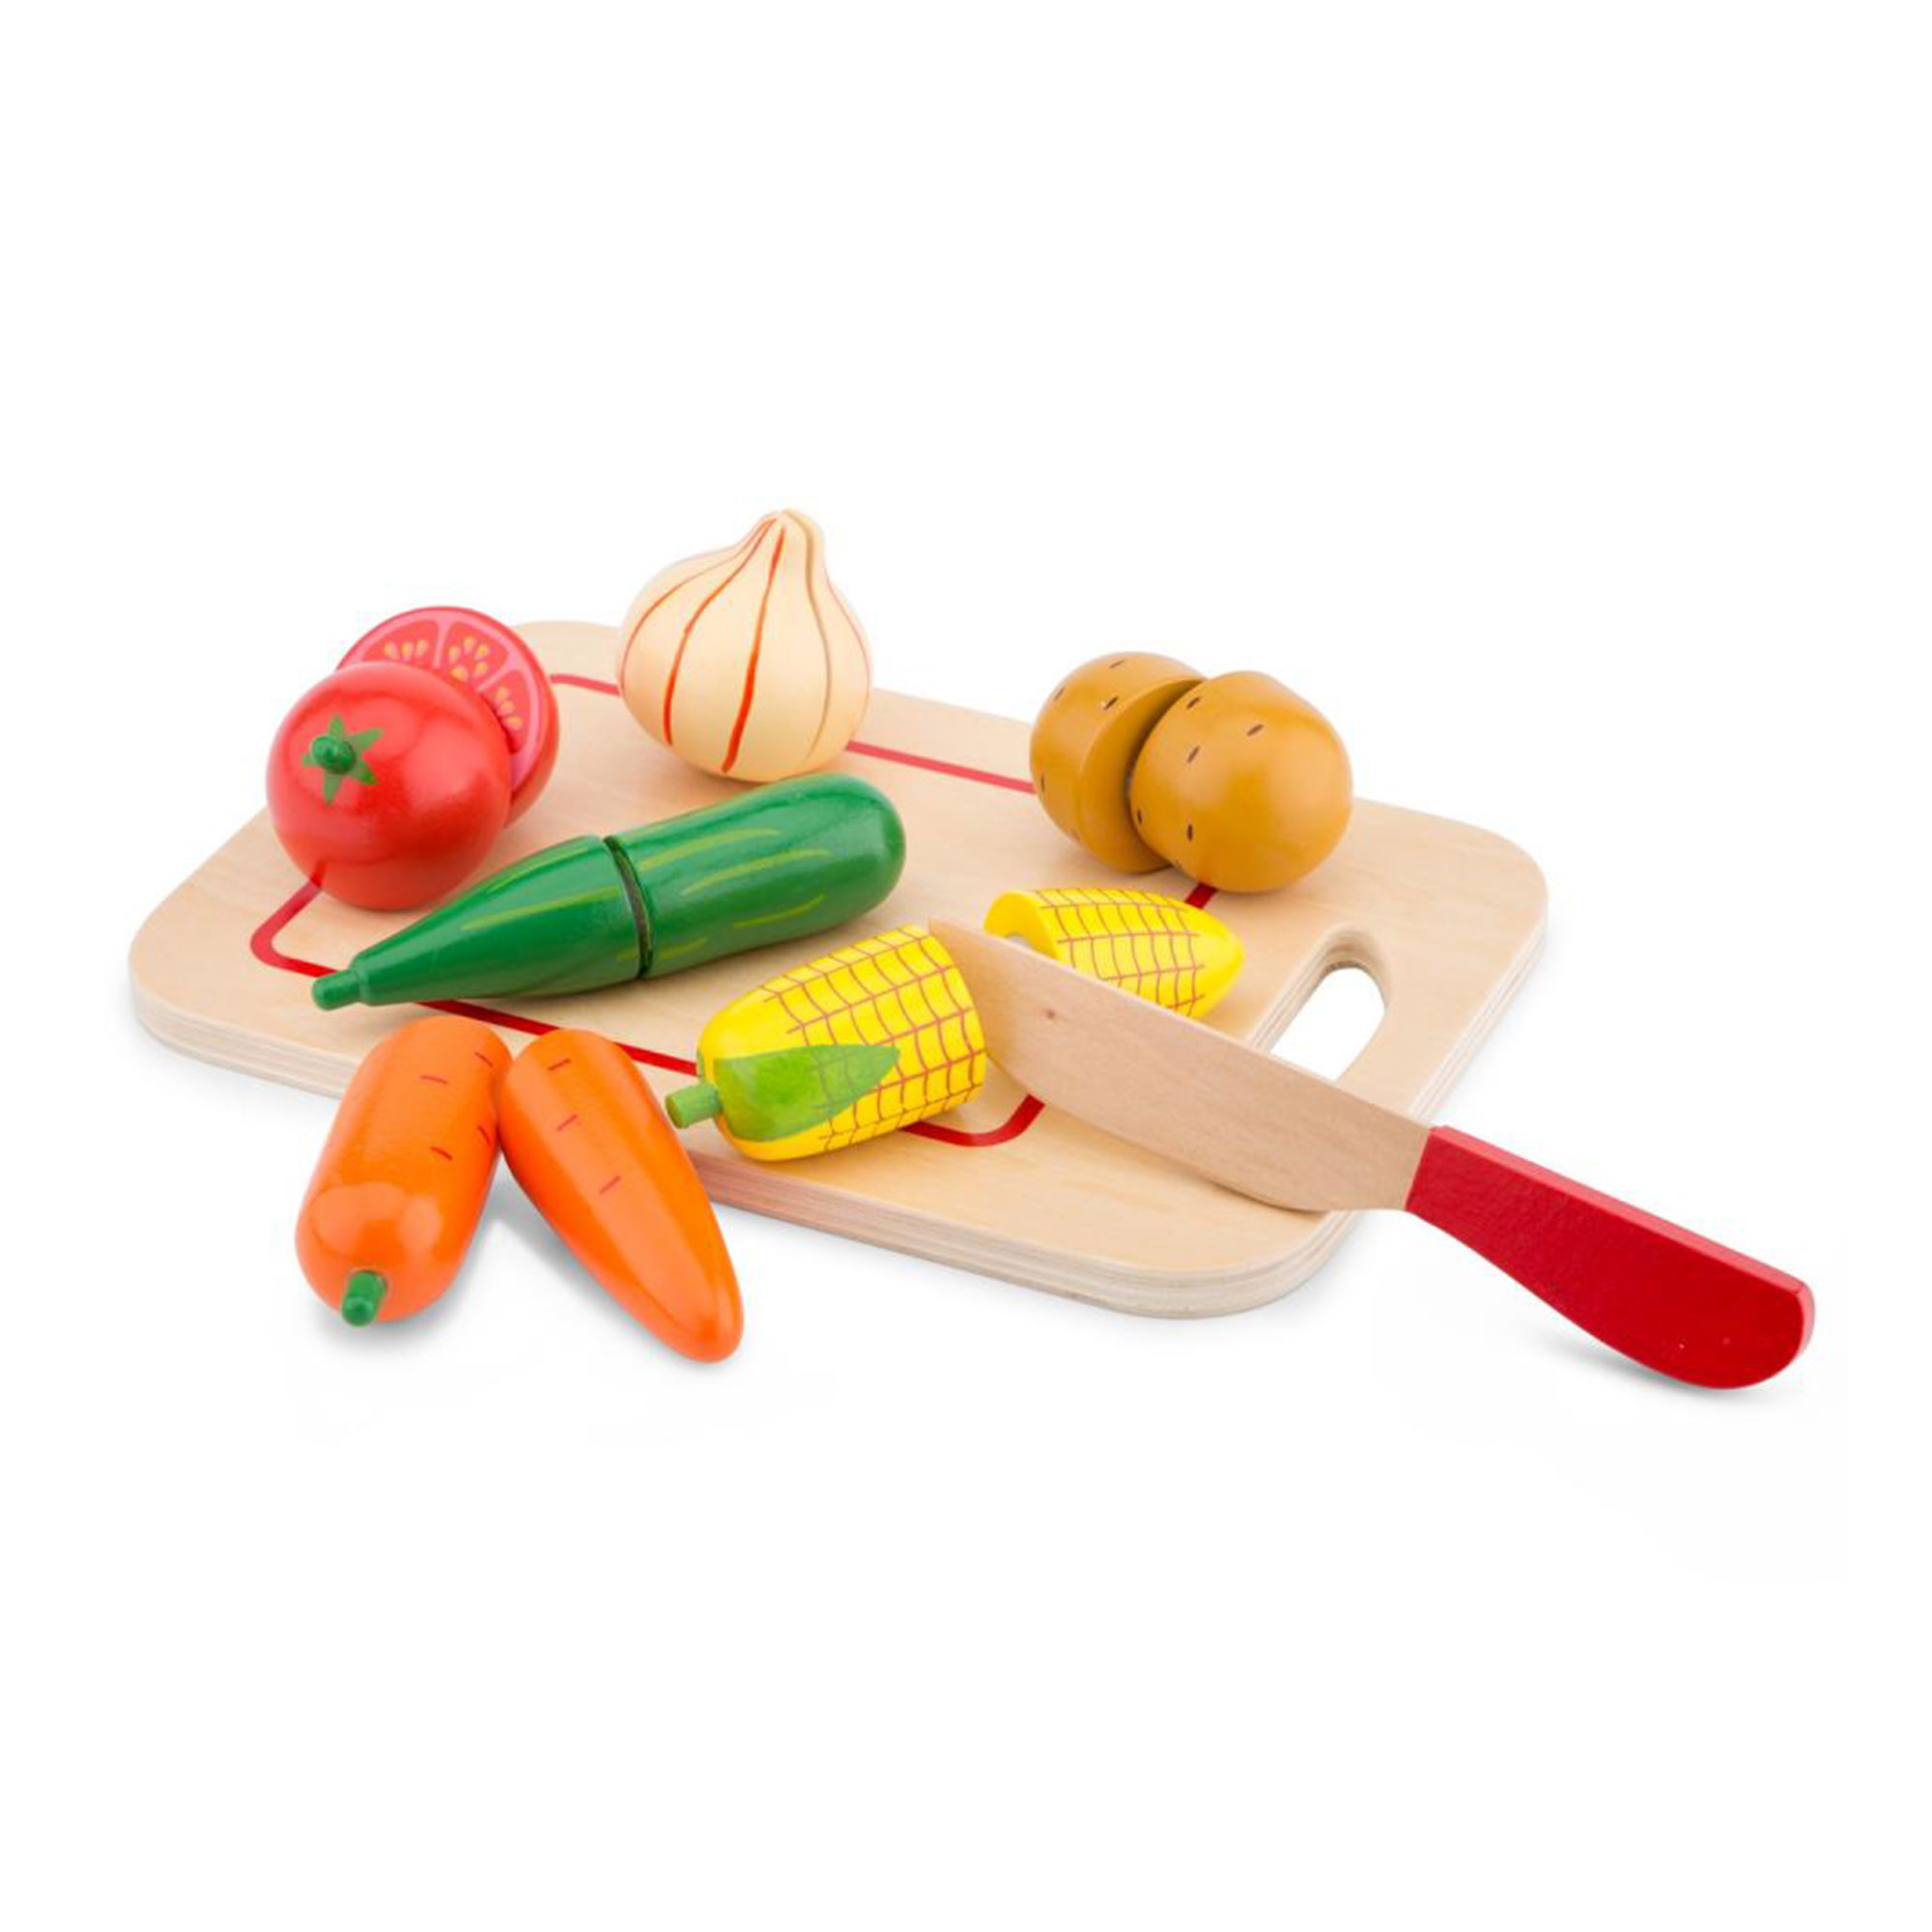 фото Набор продуктов new classic toys овощи 10577